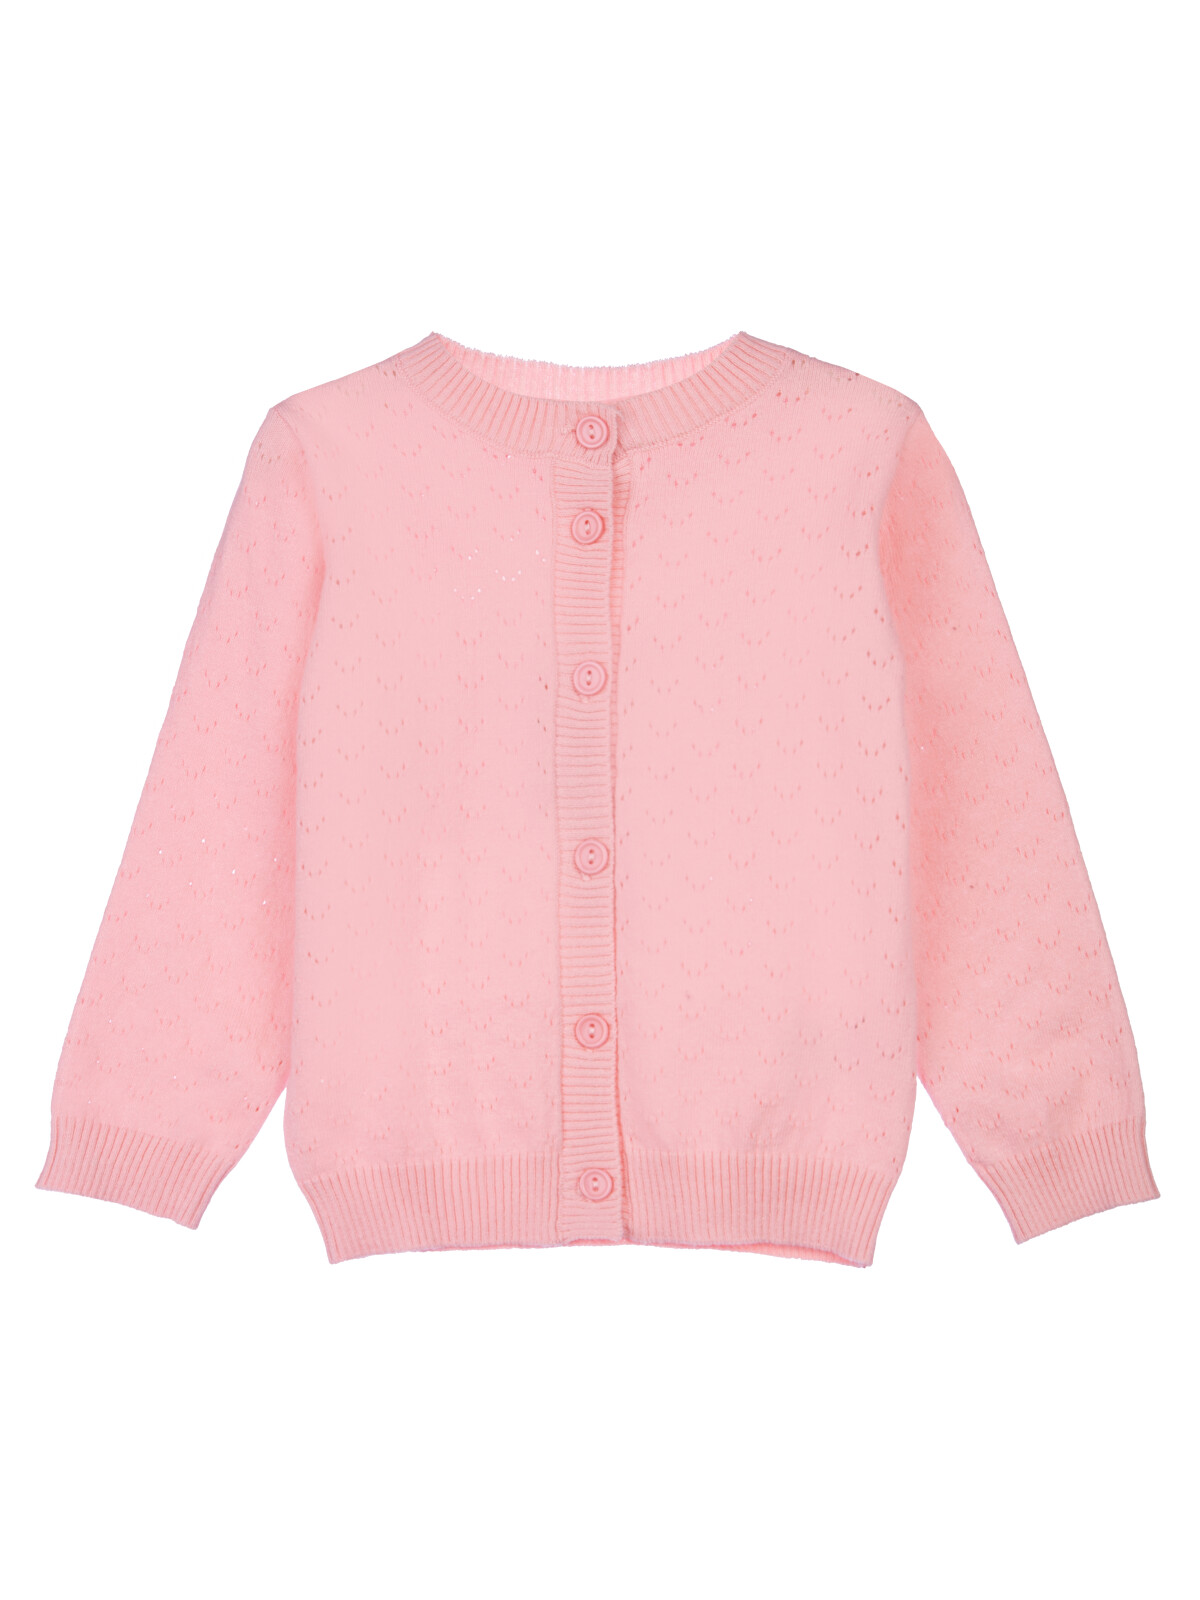 

Кардиган детский PlayToday 12329076, цвет светло-розовый, размер 92, 12329076